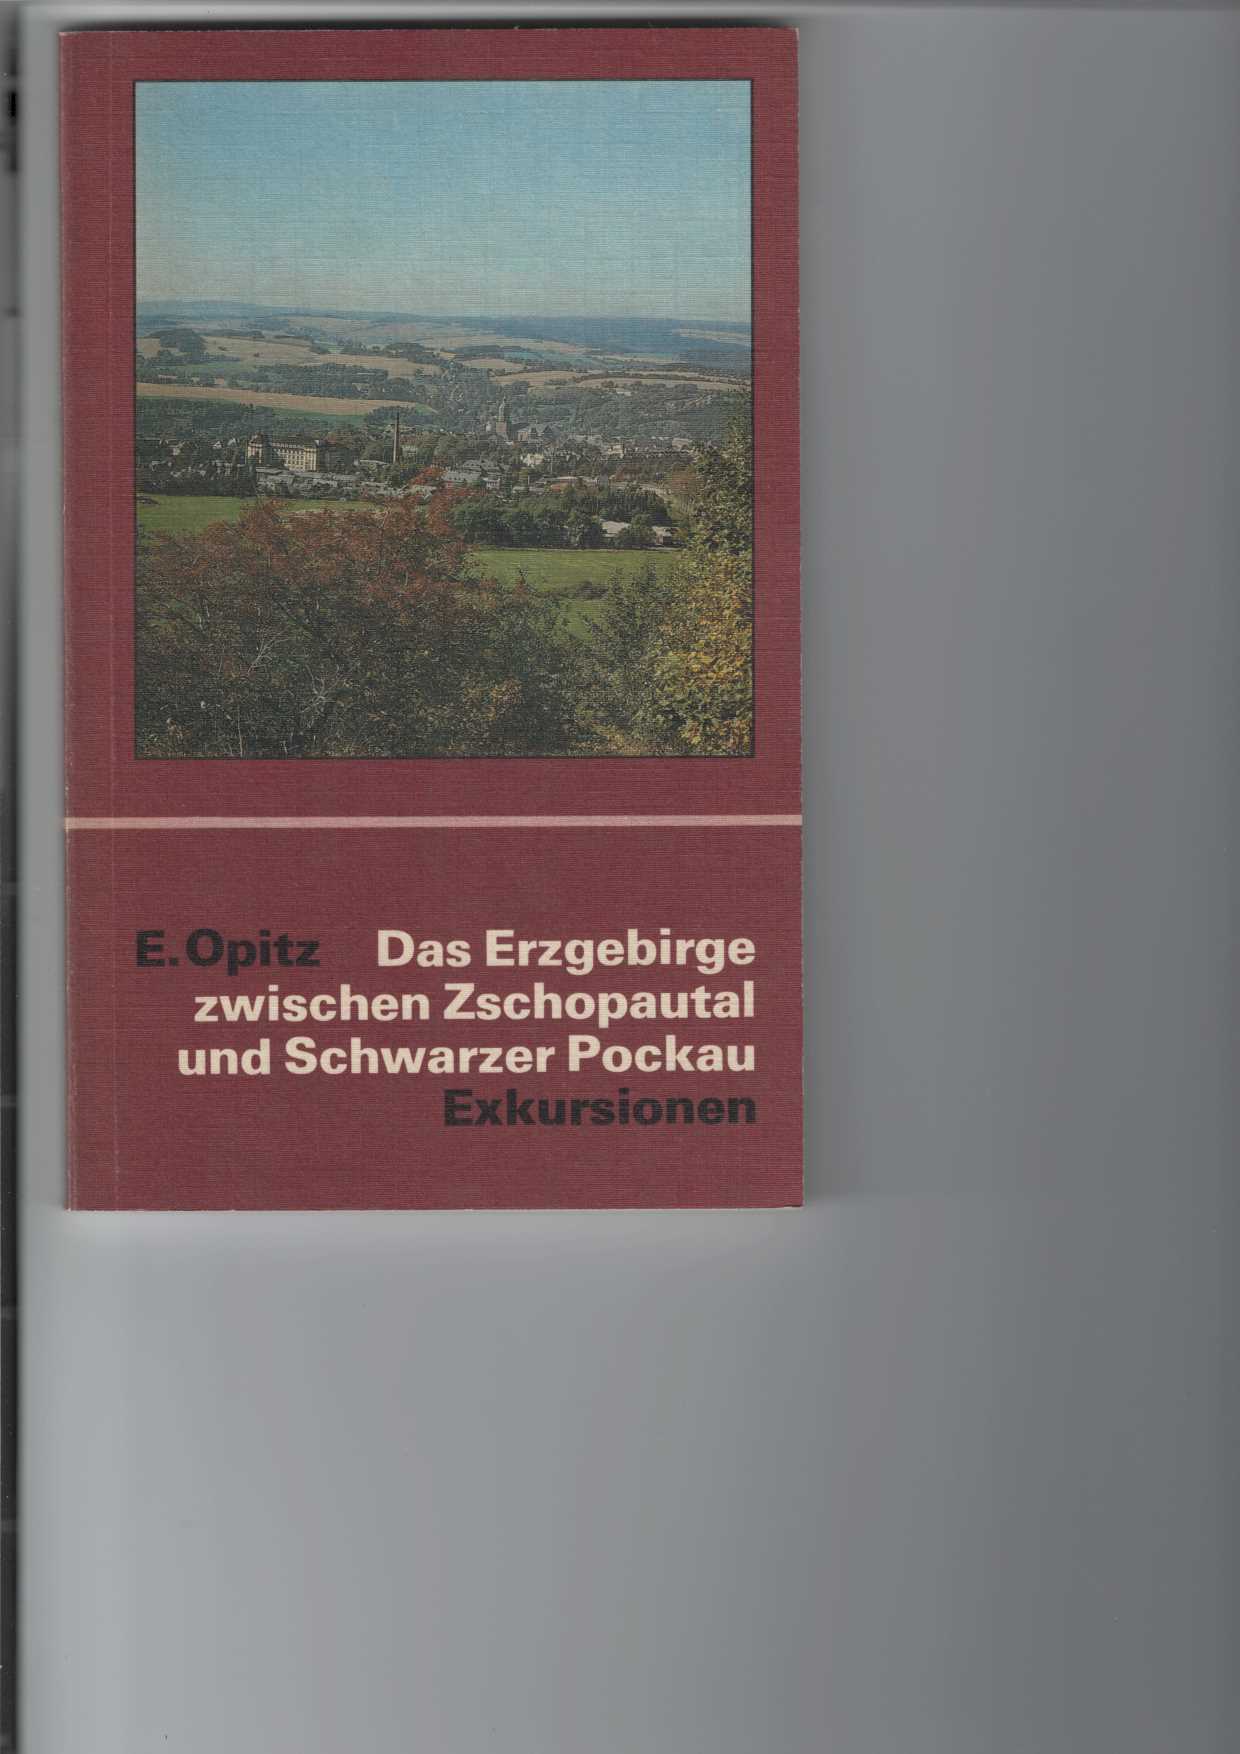 Opitz, Erhard:  Das Erzgebirge zwischen Zschopautal und Schwarzer Pockau. 